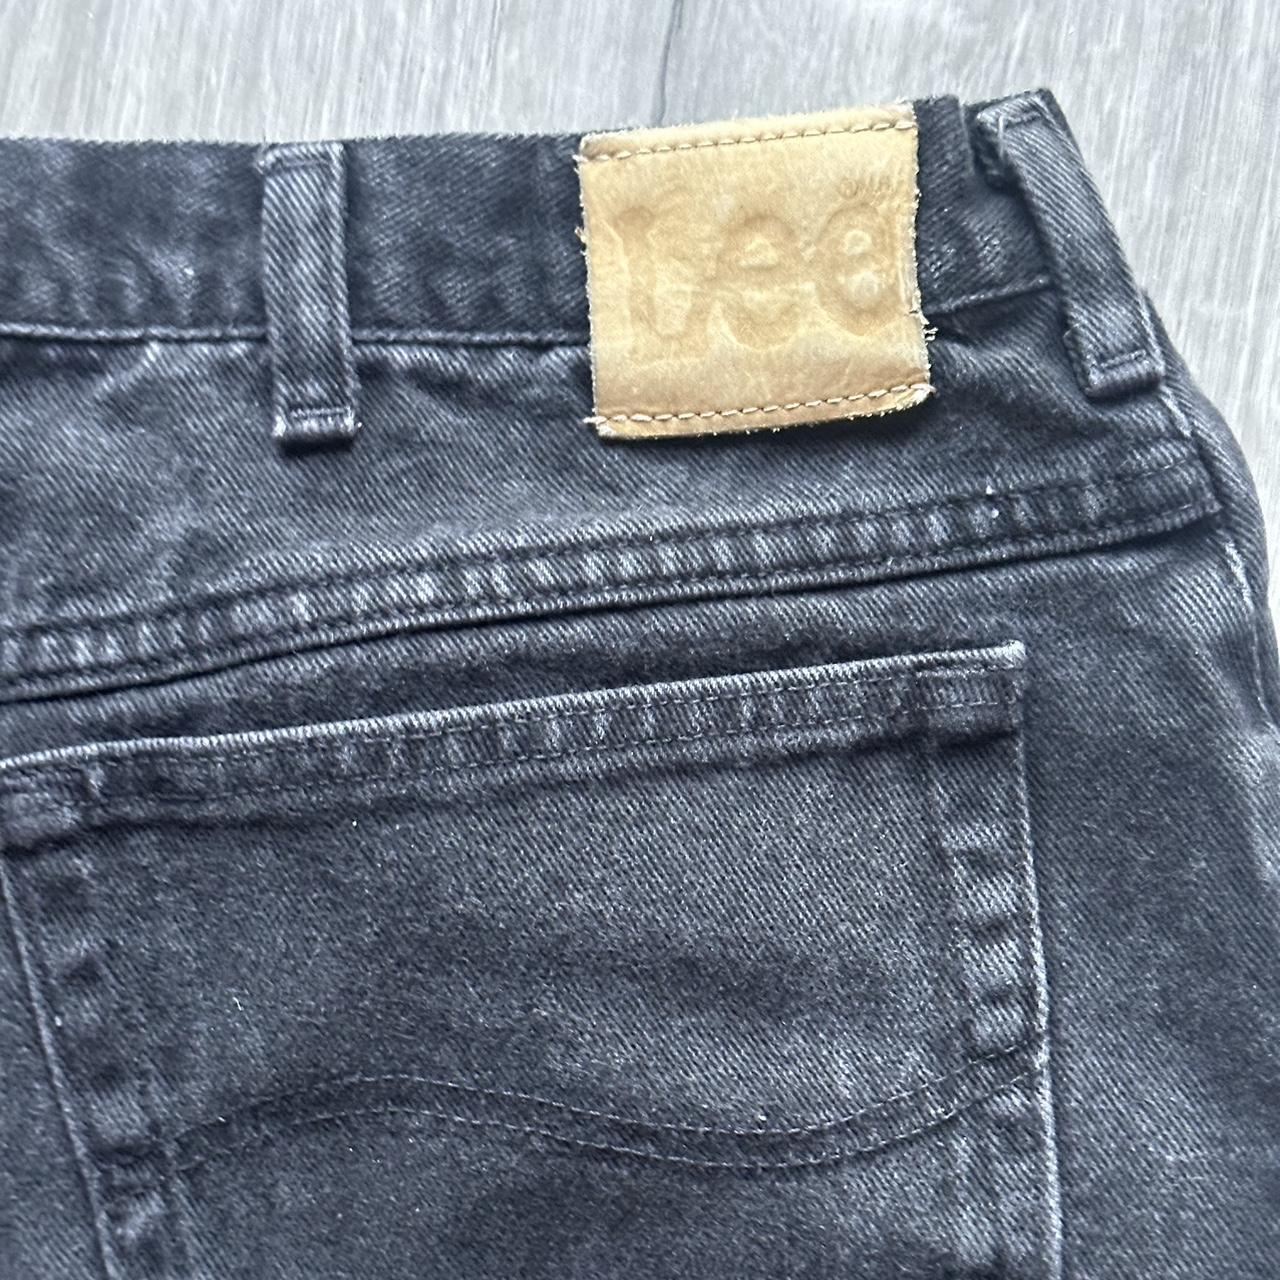 Lee Men’s Black Jeans Fits like a 36x34 Great... - Depop